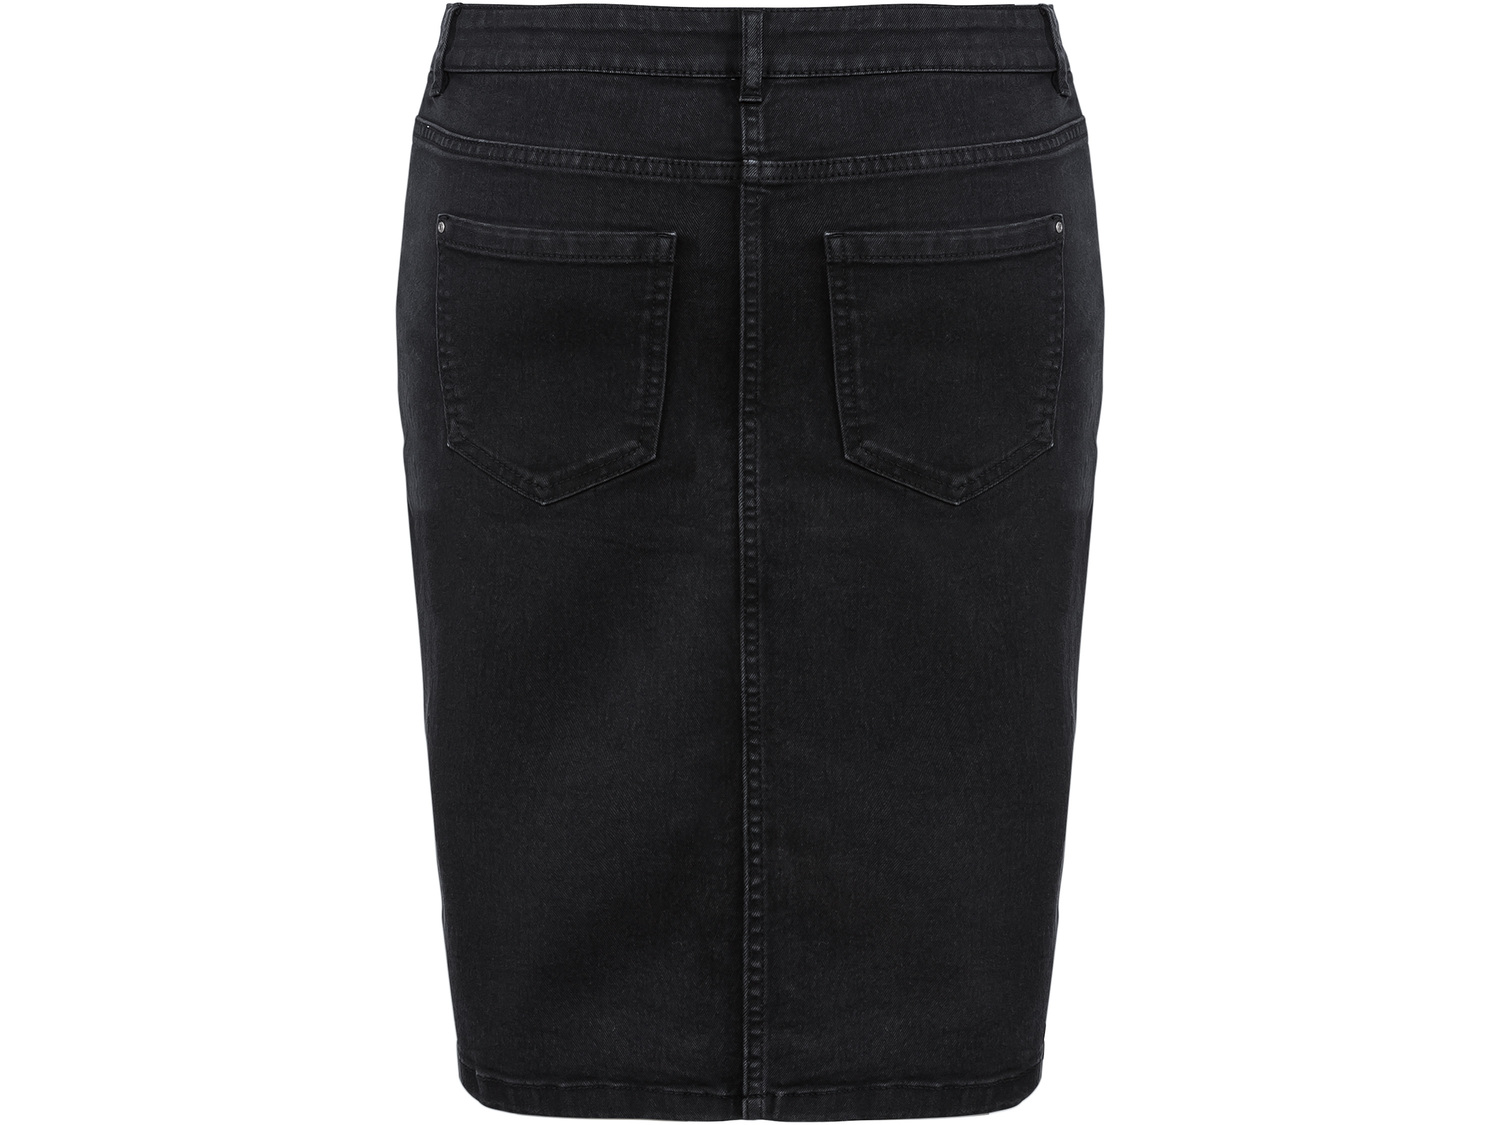 Spódnica jeansowa damska Esmara, cena 29,99 PLN 
- rozmiary: 36-44
- wysoka zawartość ...